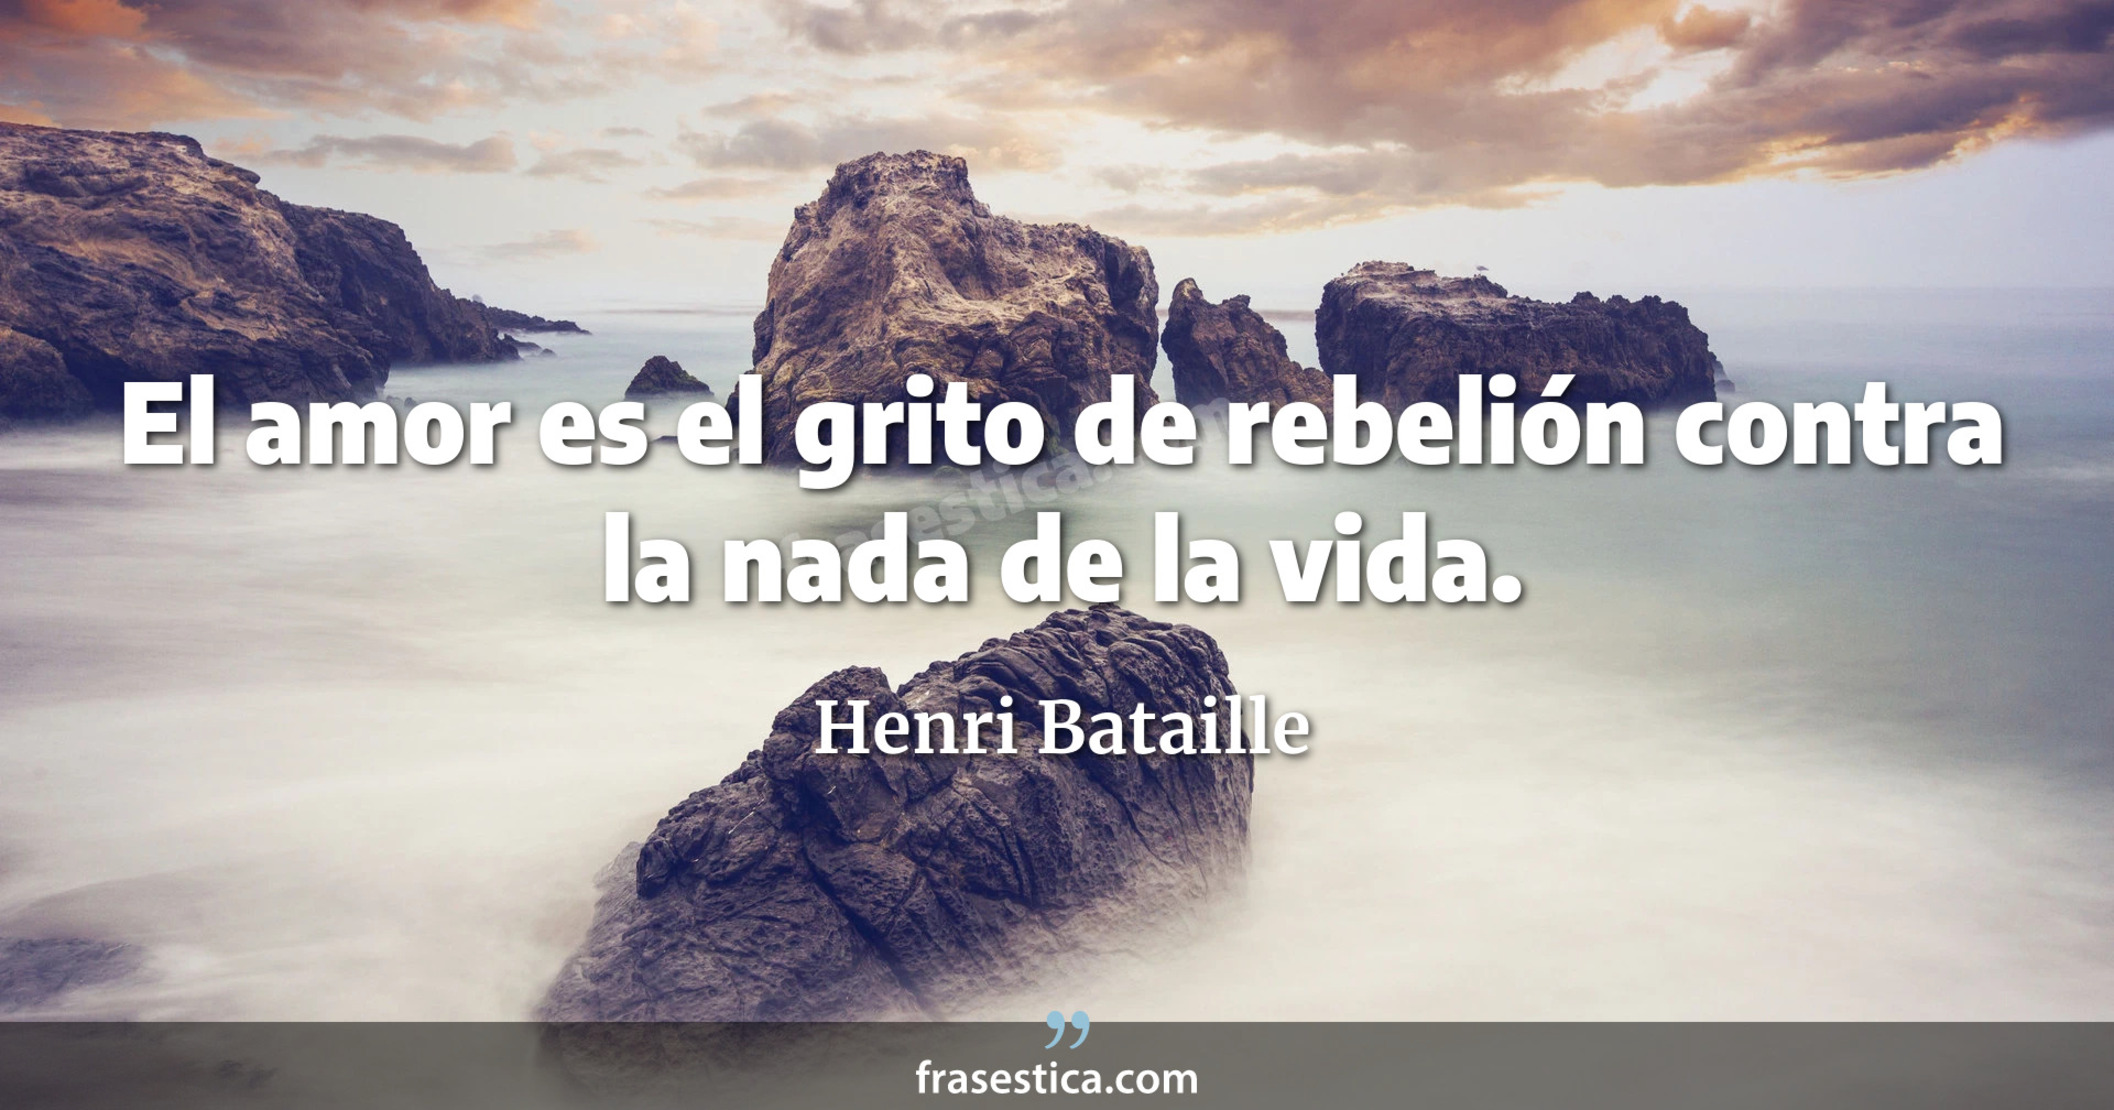 El amor es el grito de rebelión contra la nada de la vida. - Henri Bataille